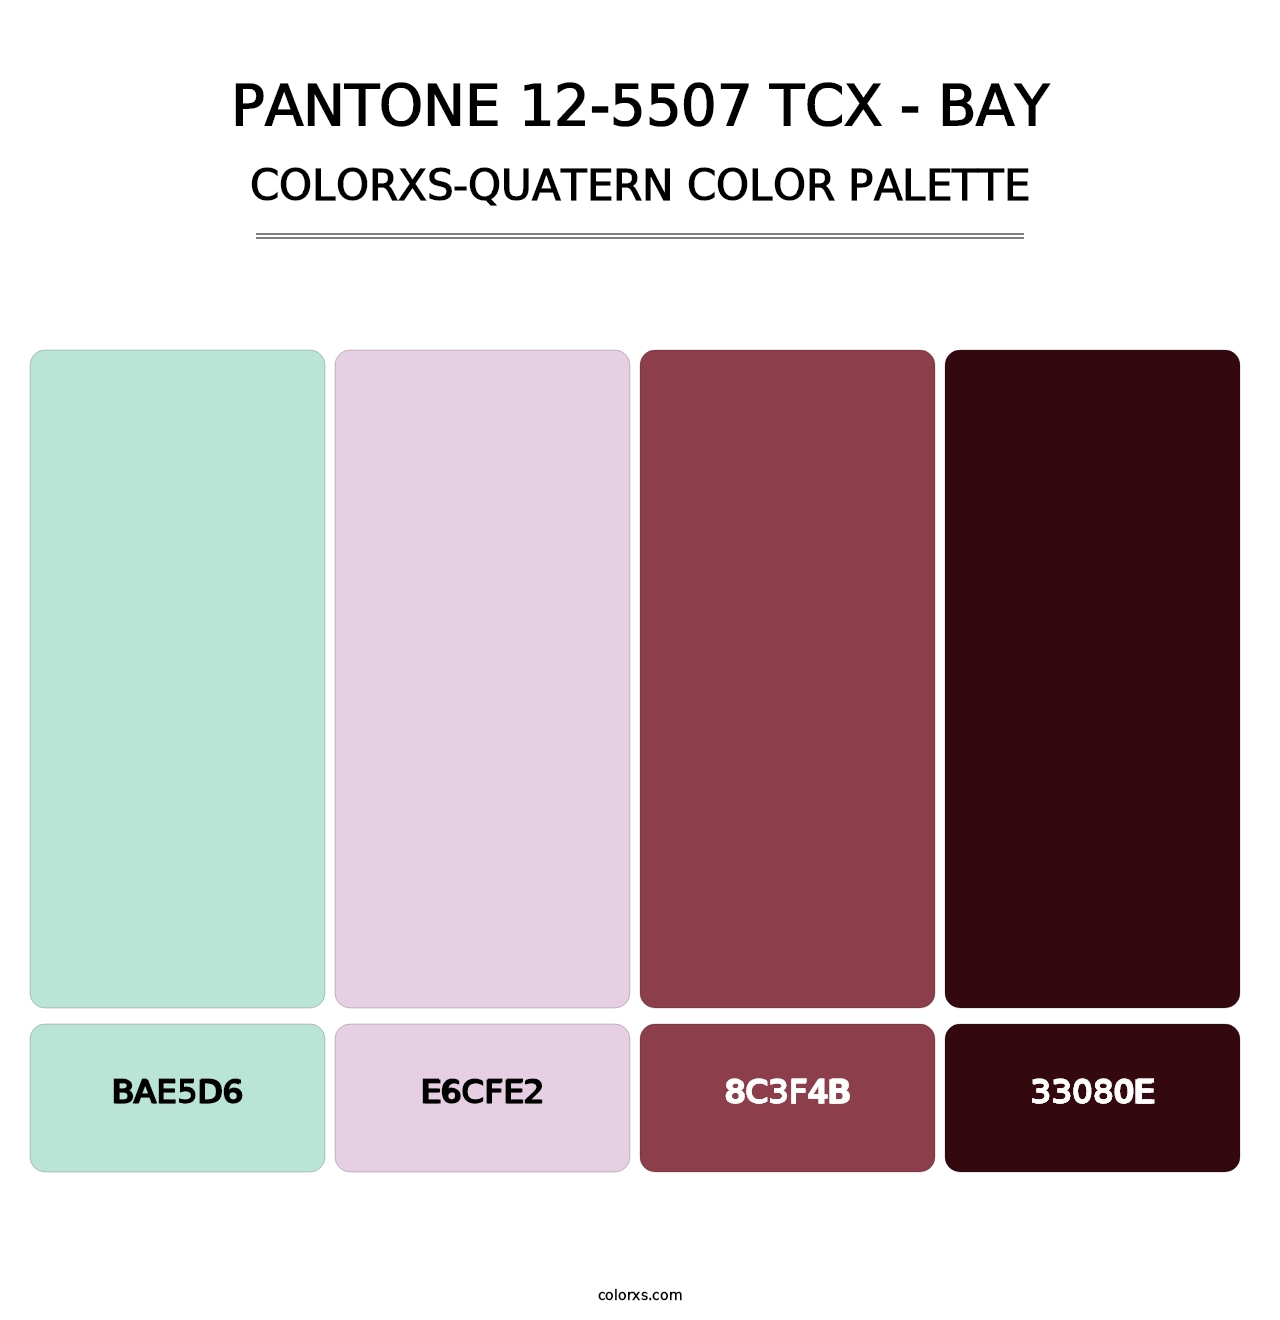 PANTONE 12-5507 TCX - Bay - Colorxs Quatern Palette